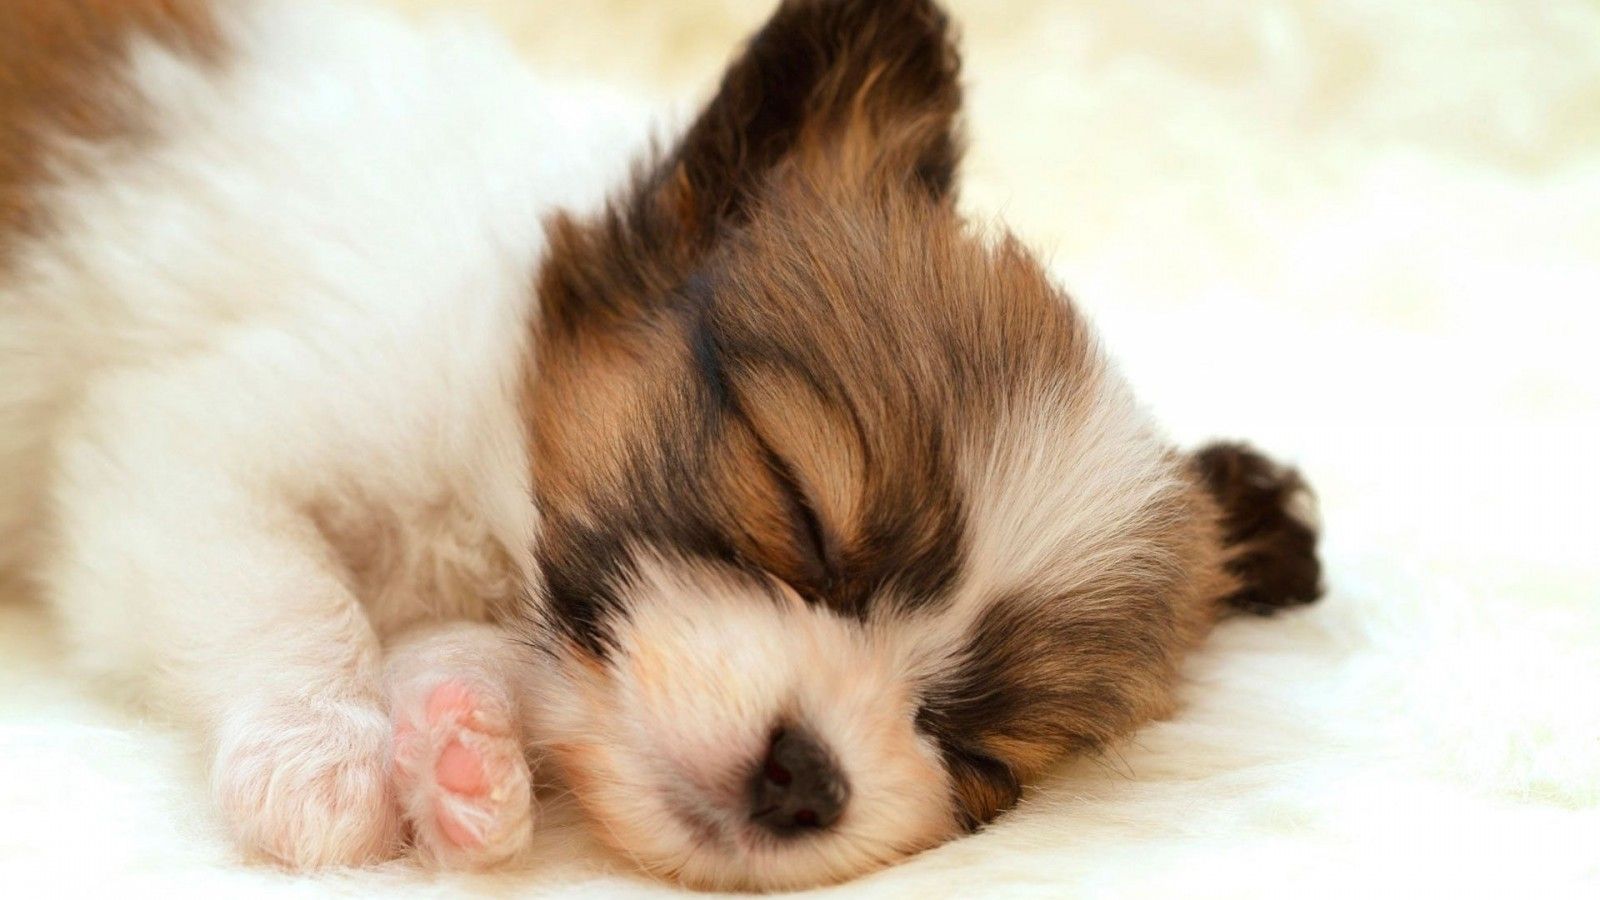 Puppy Sleep Cute Fluffy Animal iWallHD HD